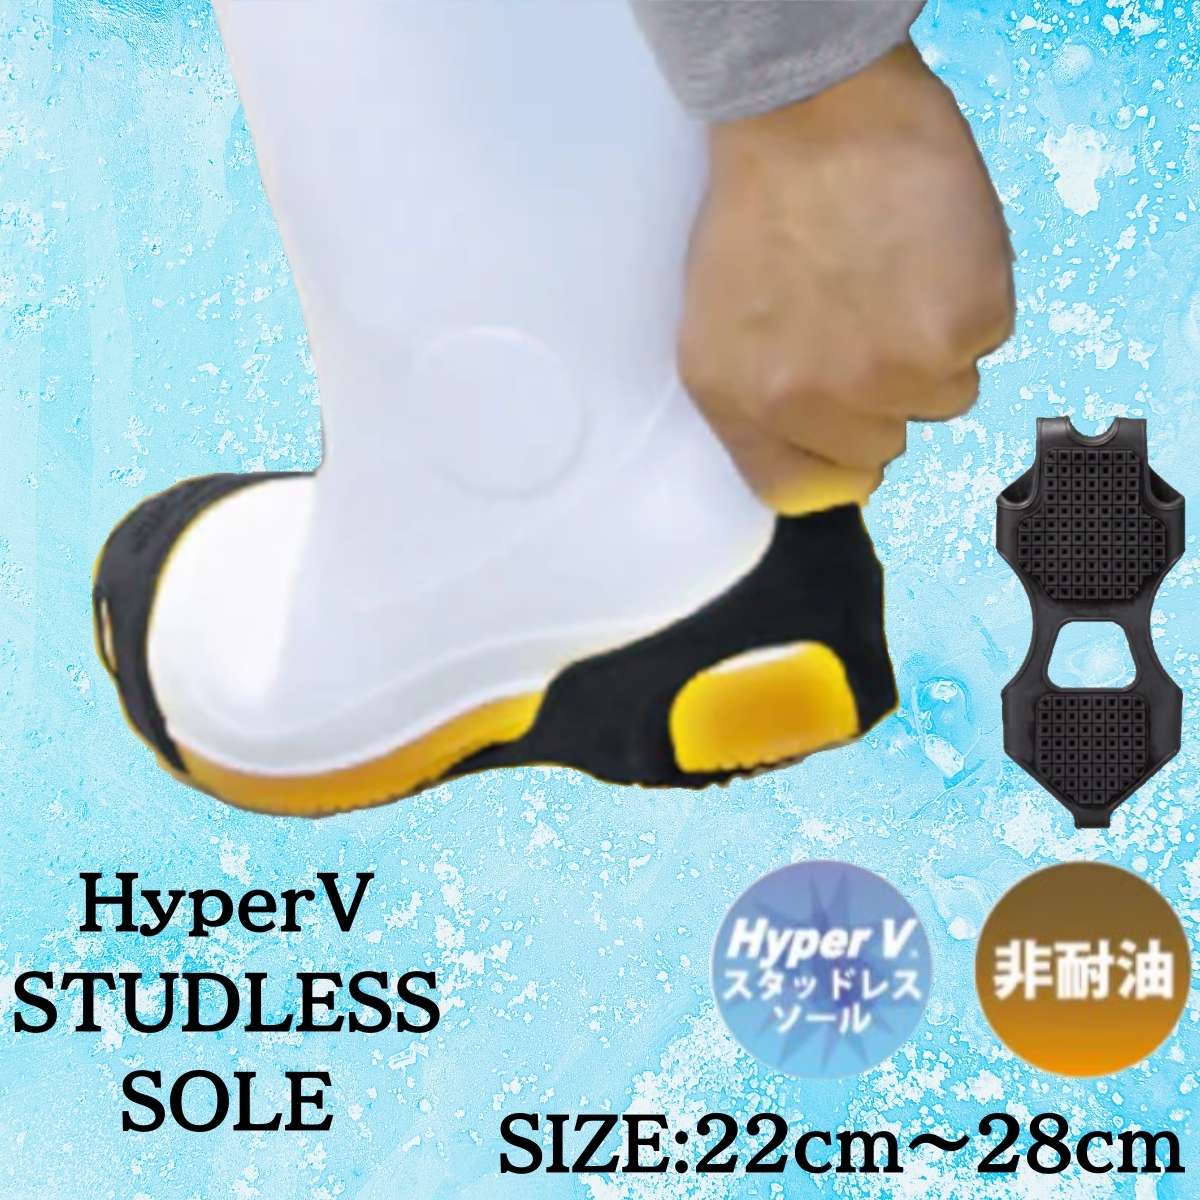  предотвращение скольжения день . резина гипер- v гипер- v подошва гипер- v зимний гипер- v зимний подошва рабочая обувь сапоги безопасная обувь 